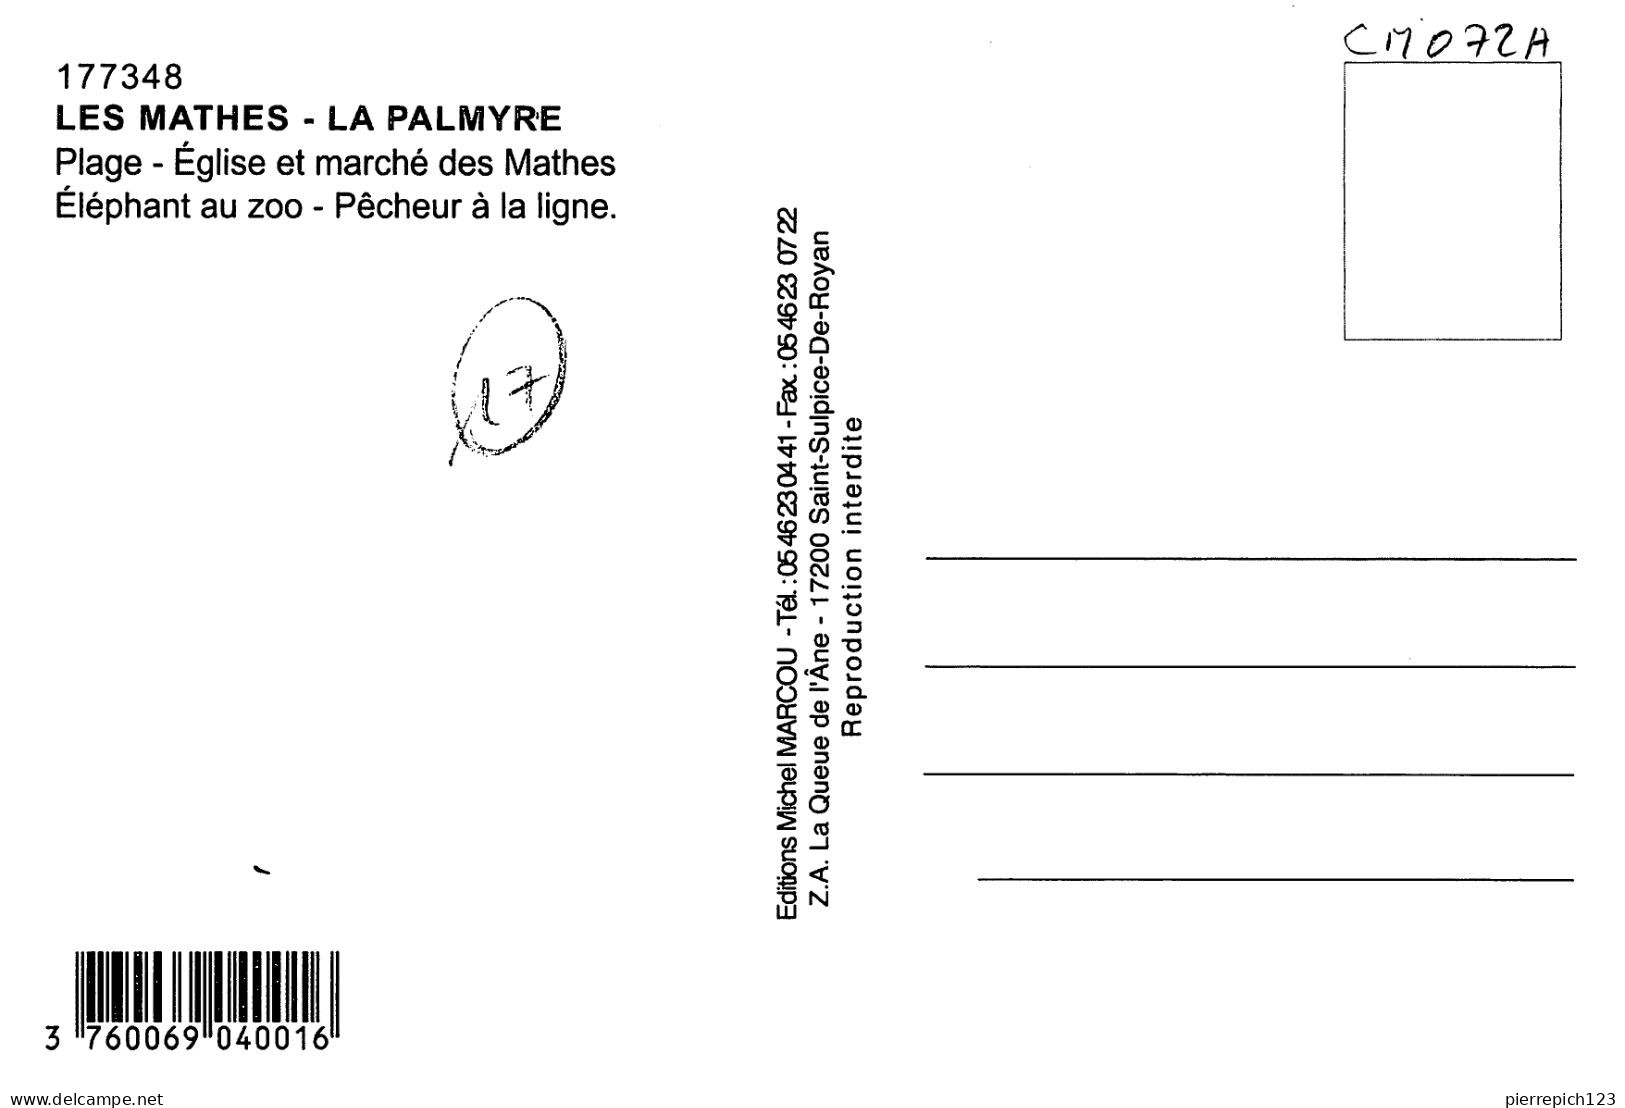 17 - Les Mathes - La Palmyre - Multivues - Les Mathes